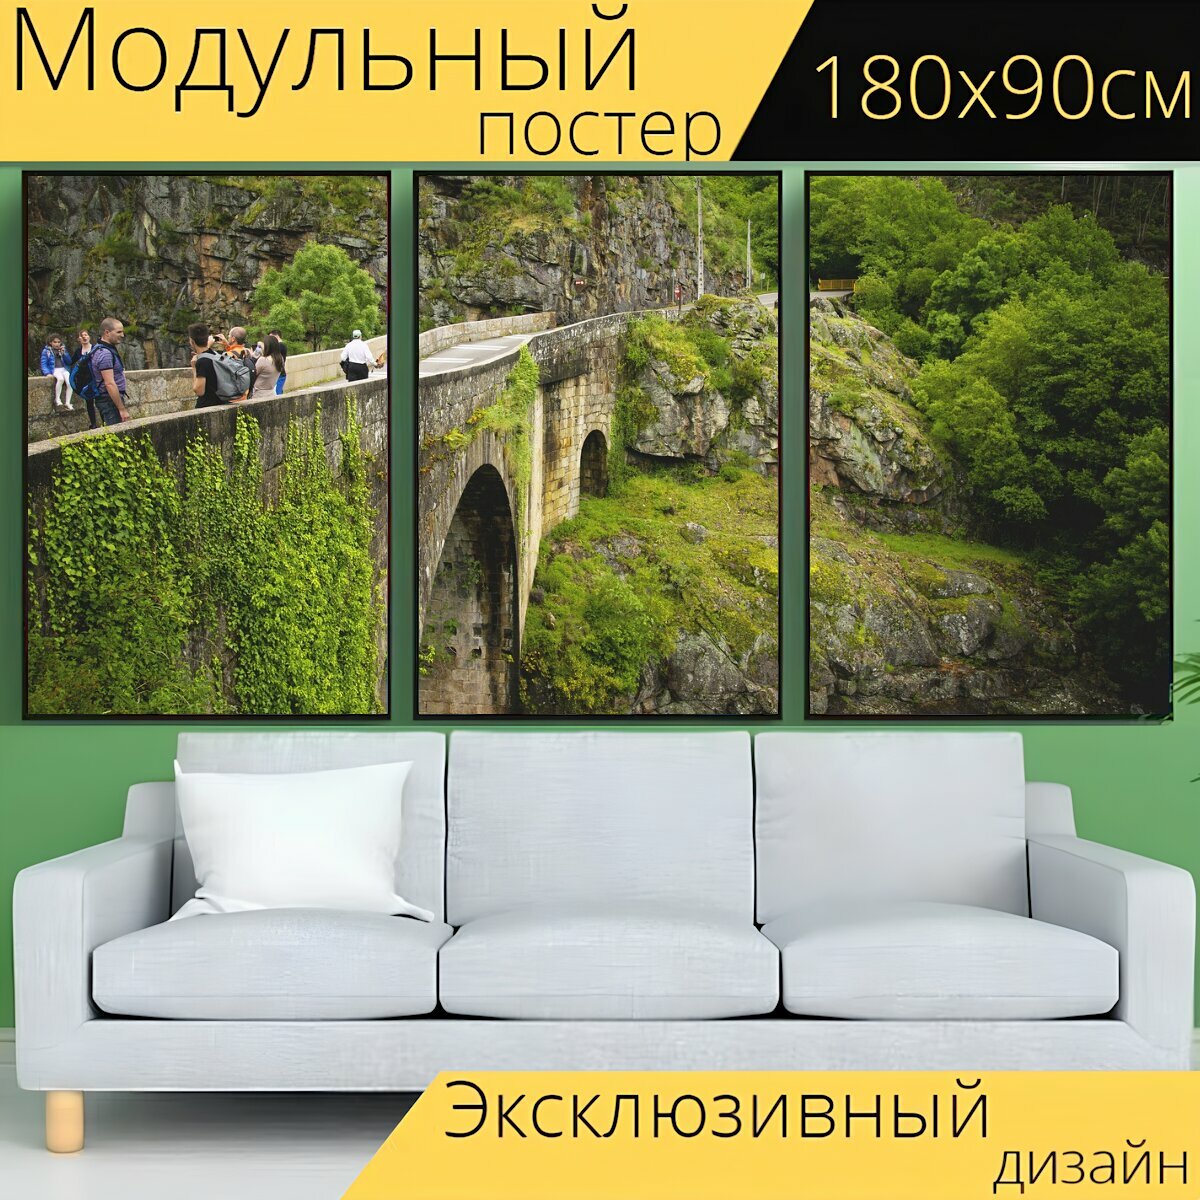 Модульный постер "Мост, гора, зелень" 180 x 90 см. для интерьера